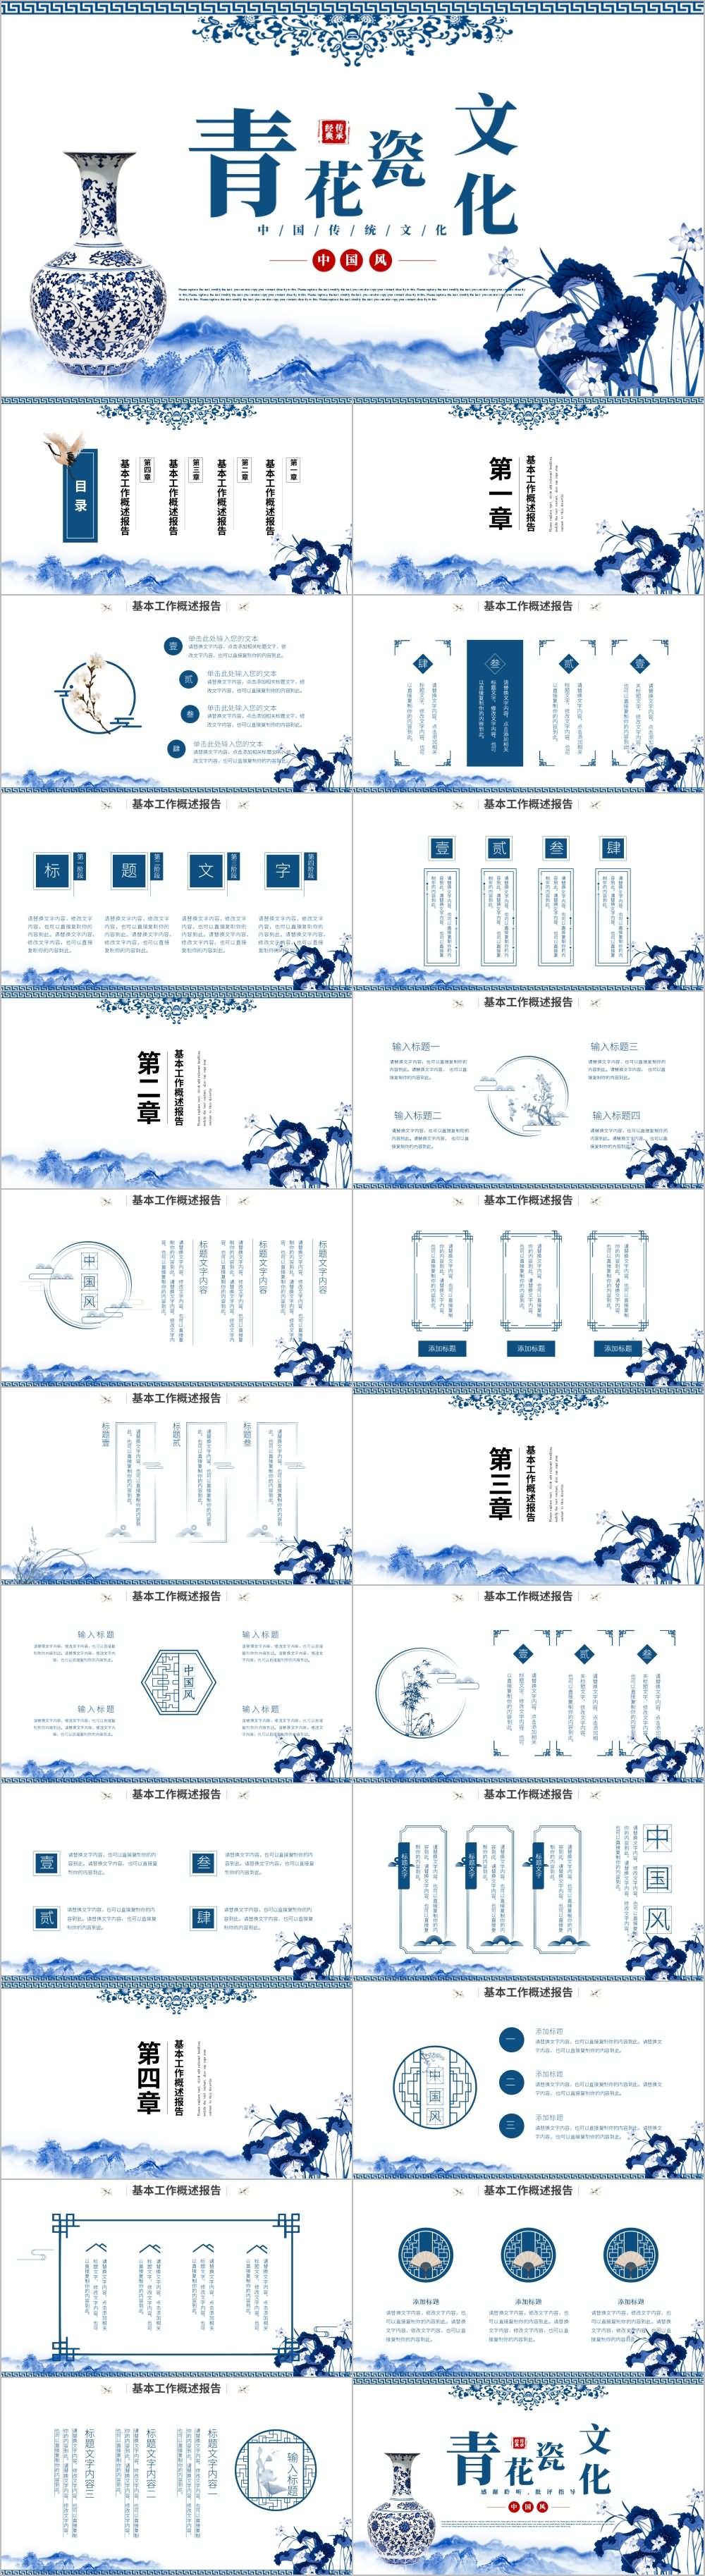 远山古风青花瓷传统文化分享PPT模板